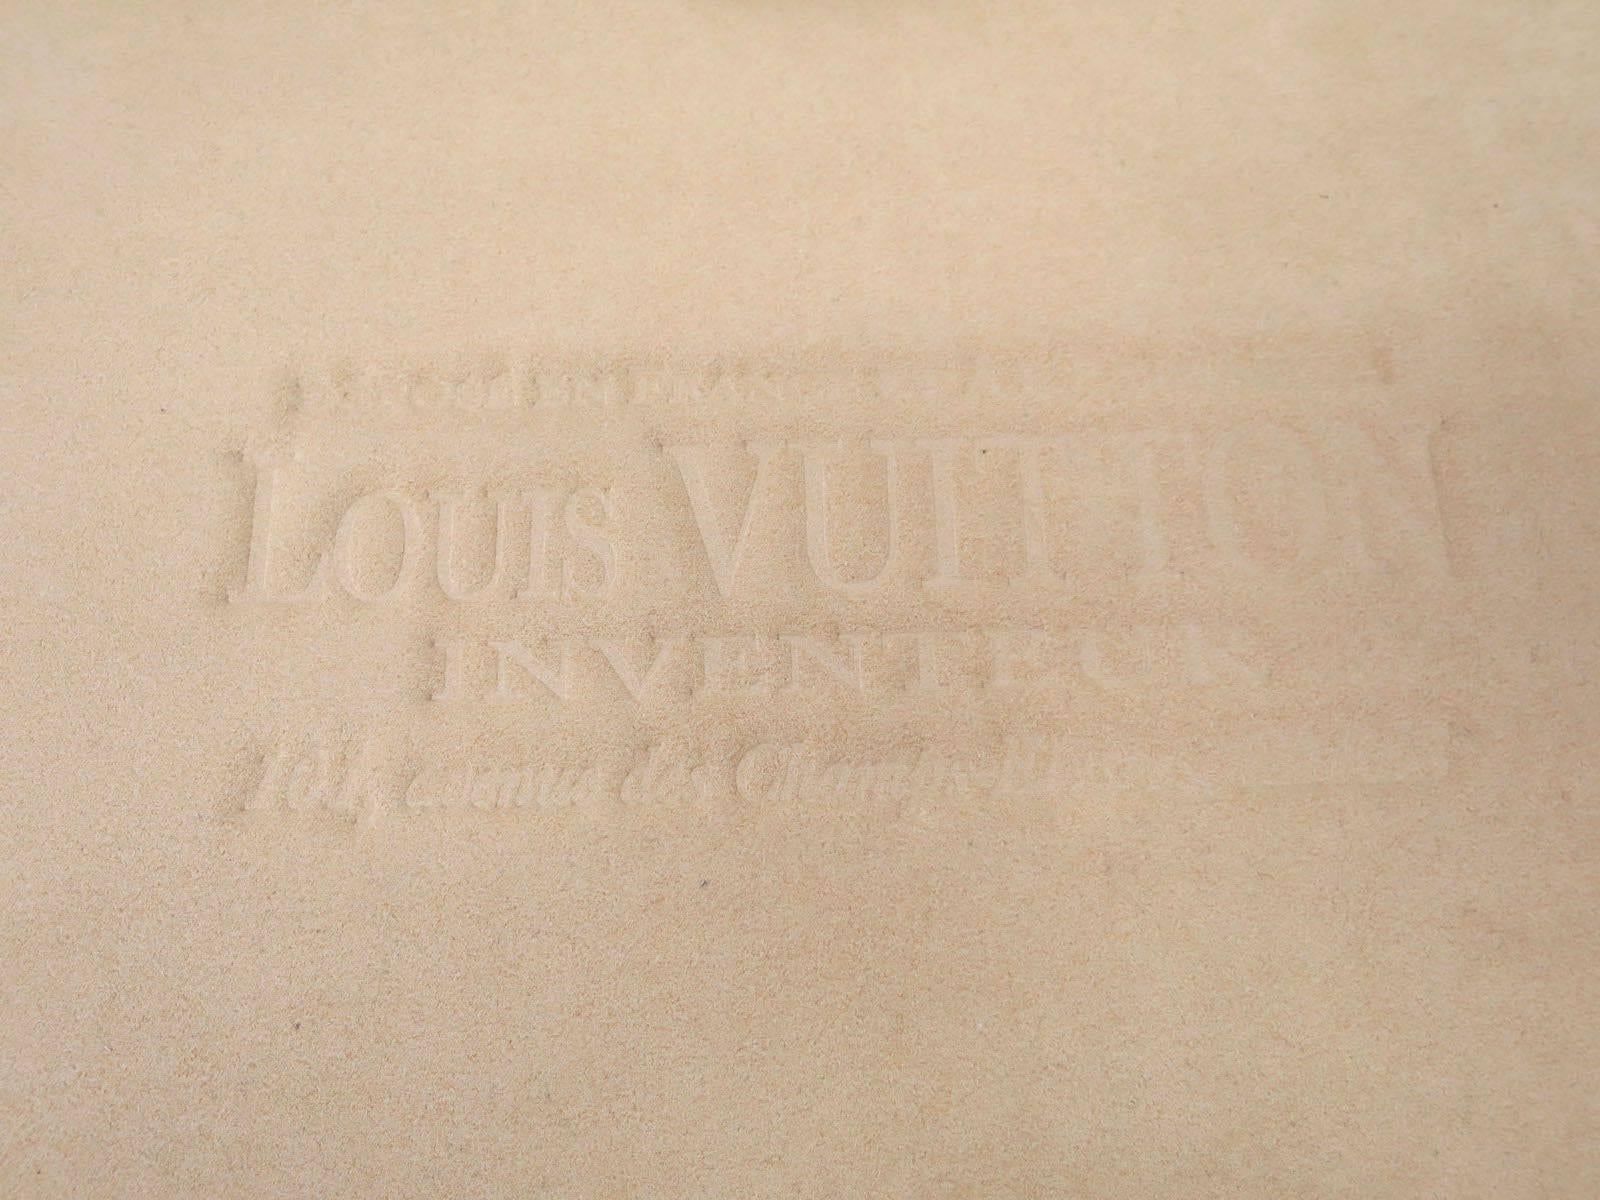 Louis Vuitton Monogram Canvas Laptop Carry Case Tech Accessory 1